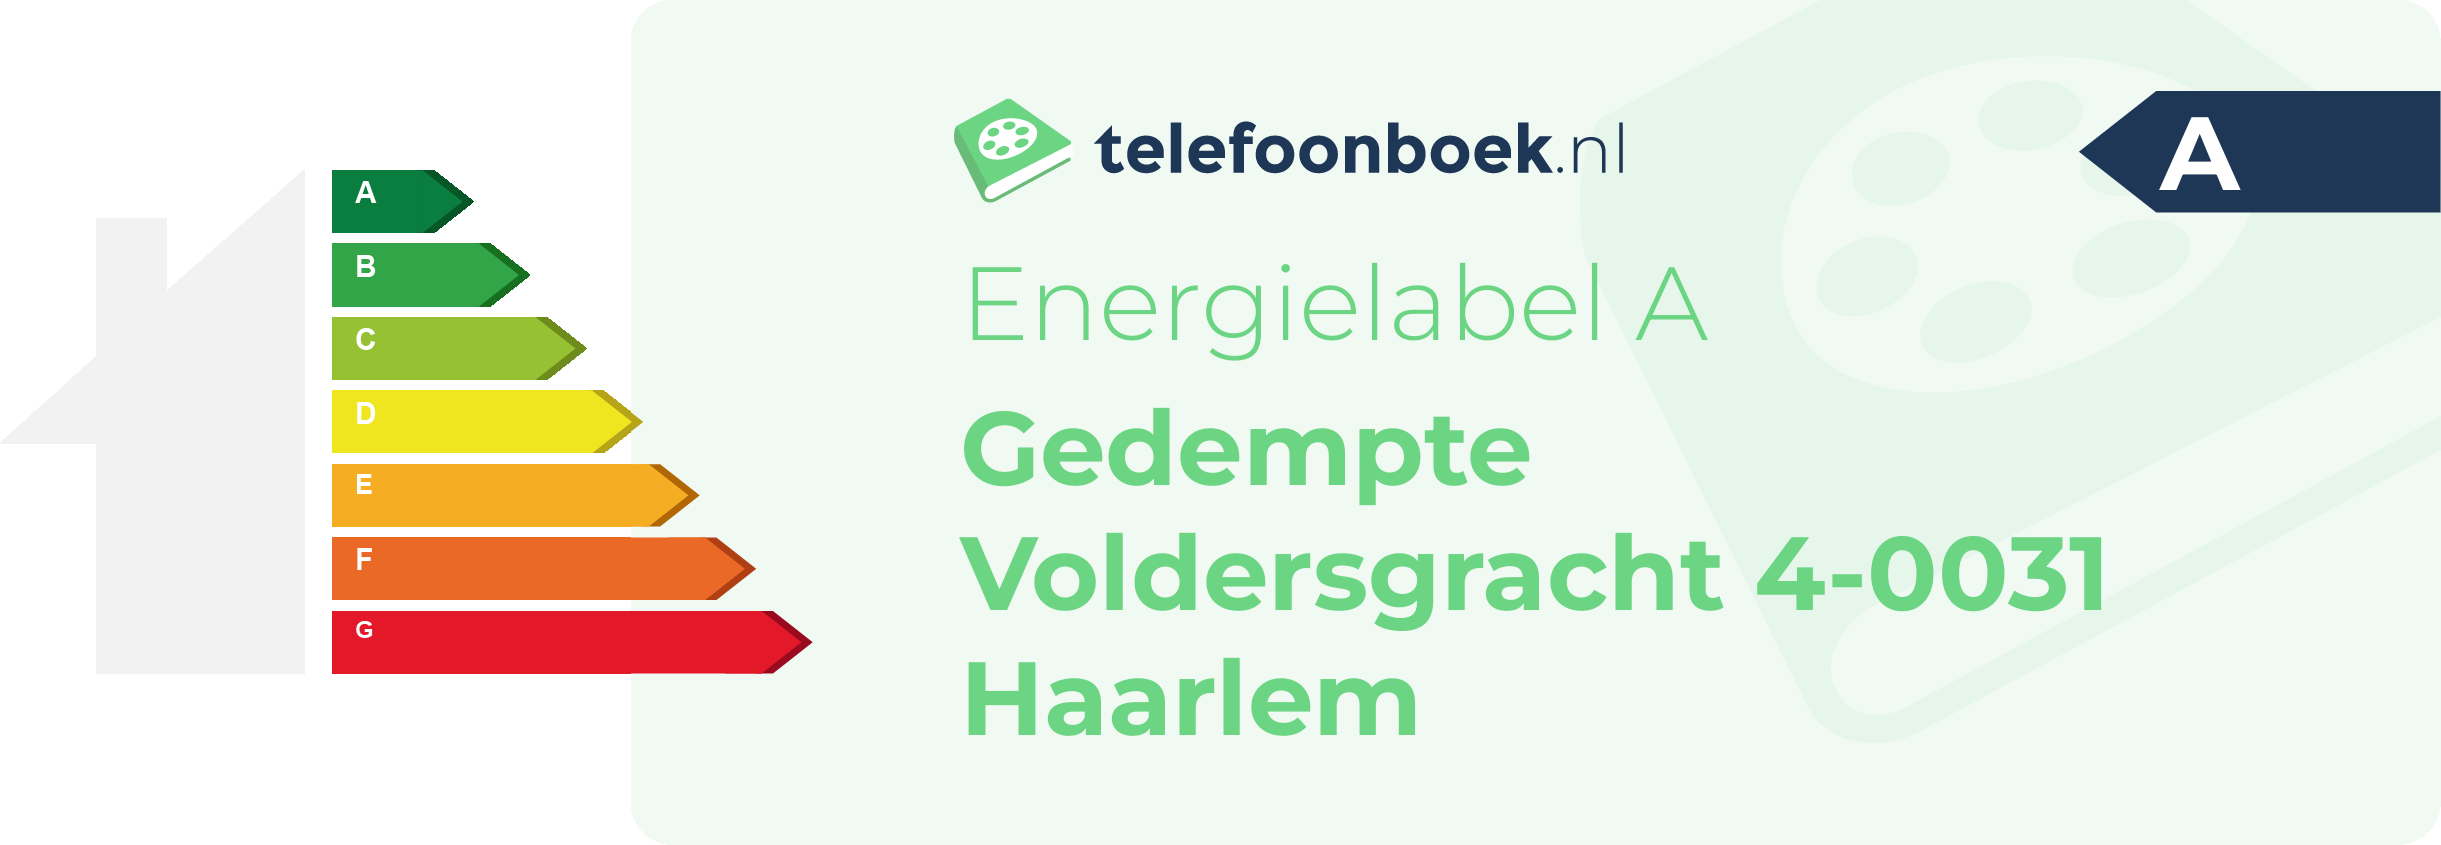 Energielabel Gedempte Voldersgracht 4-0031 Haarlem